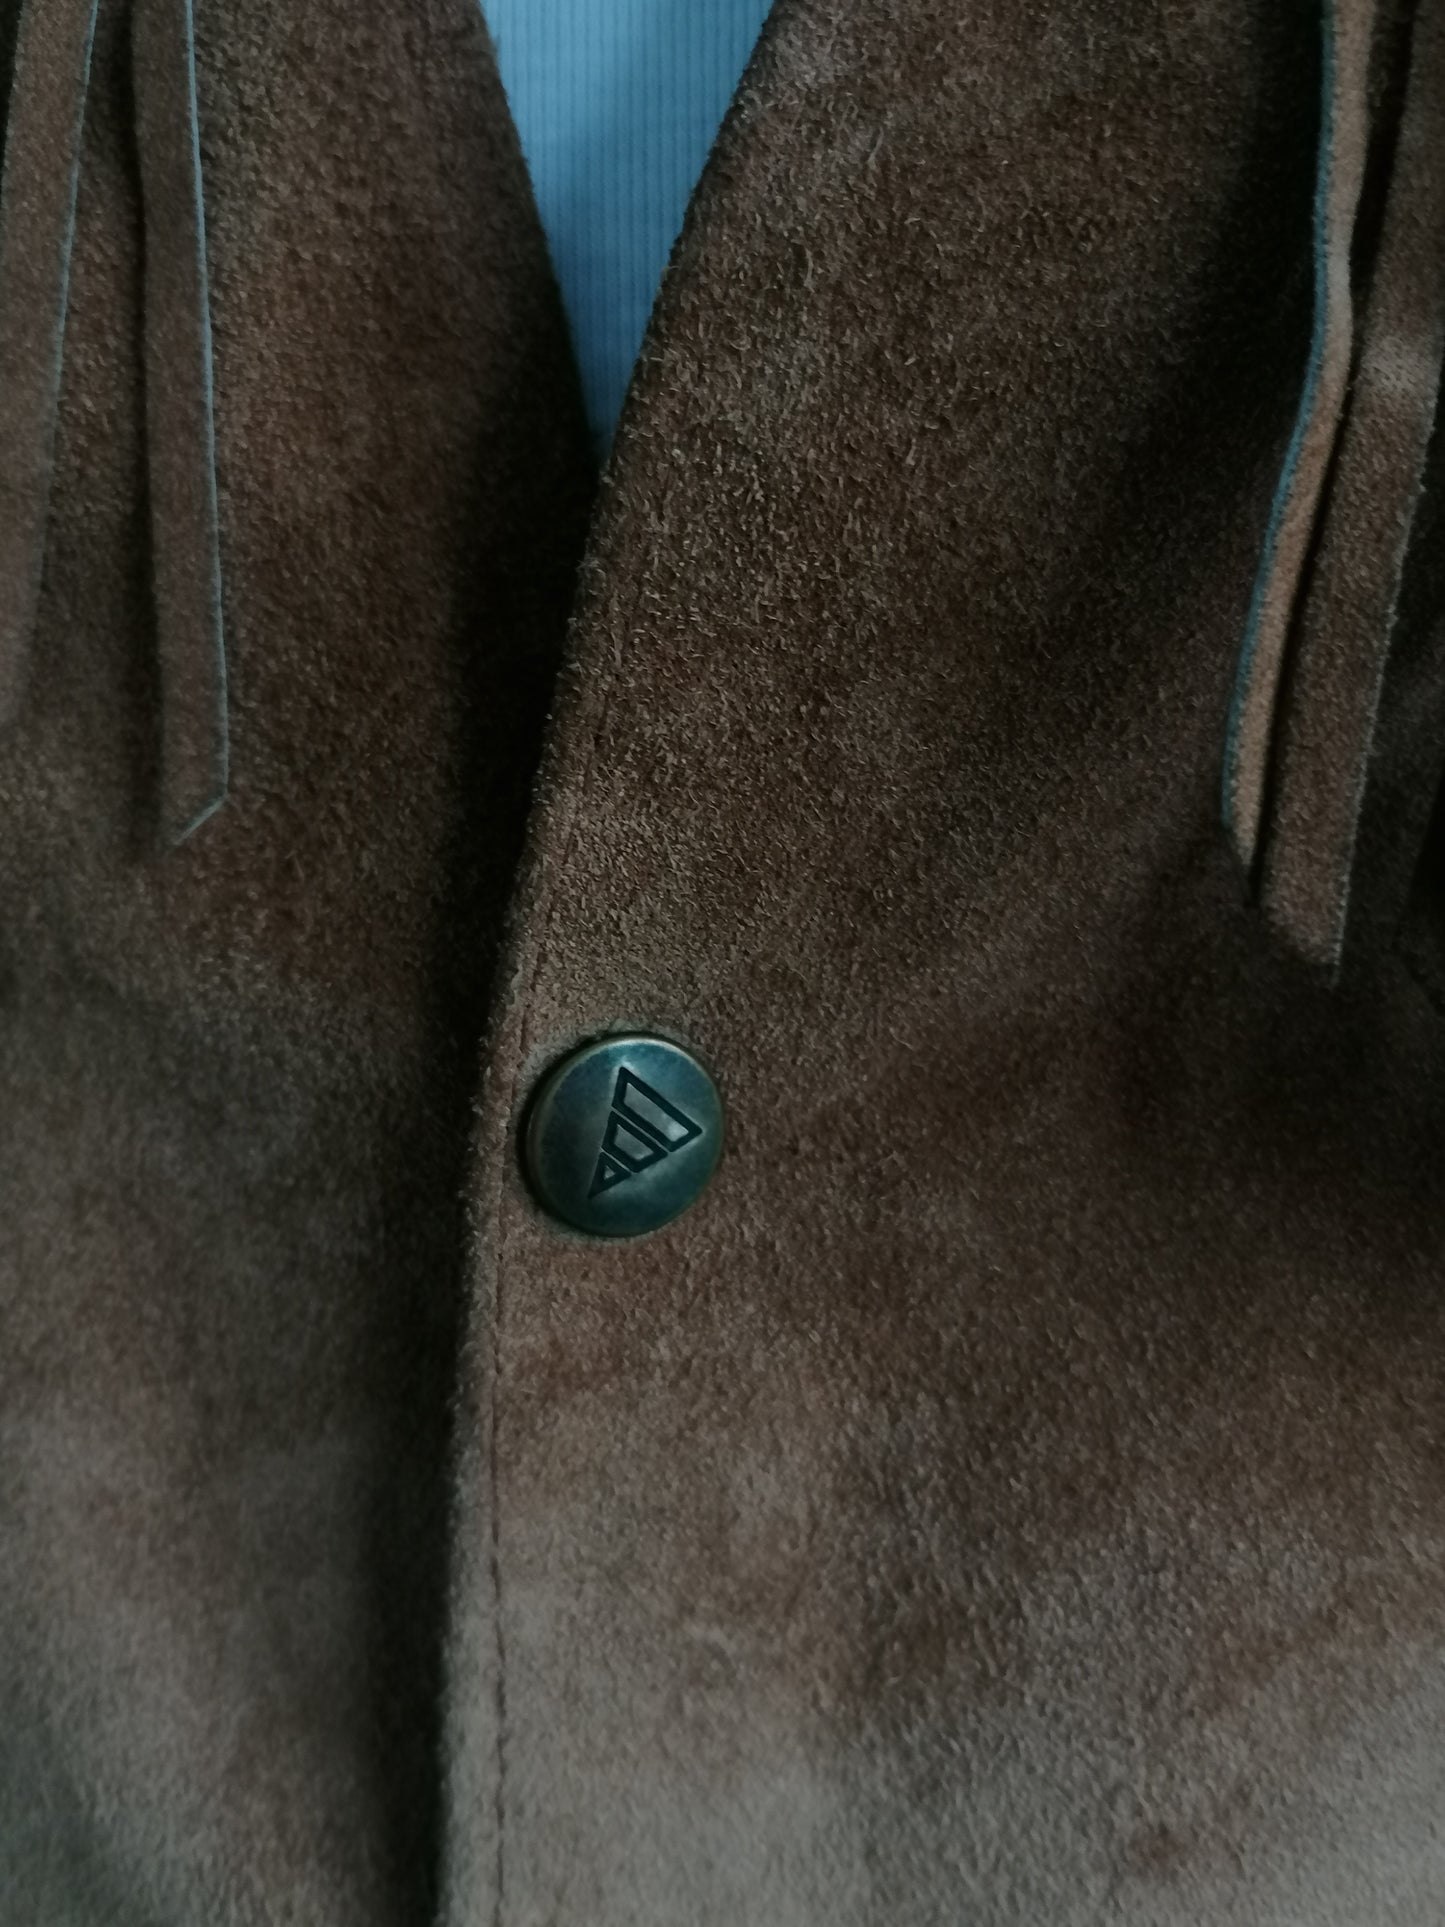 C. Chaleco de gamuza de cuero del condado con franjas y pernos de prensa y acentos de veteros. Color marrón. Talla L.